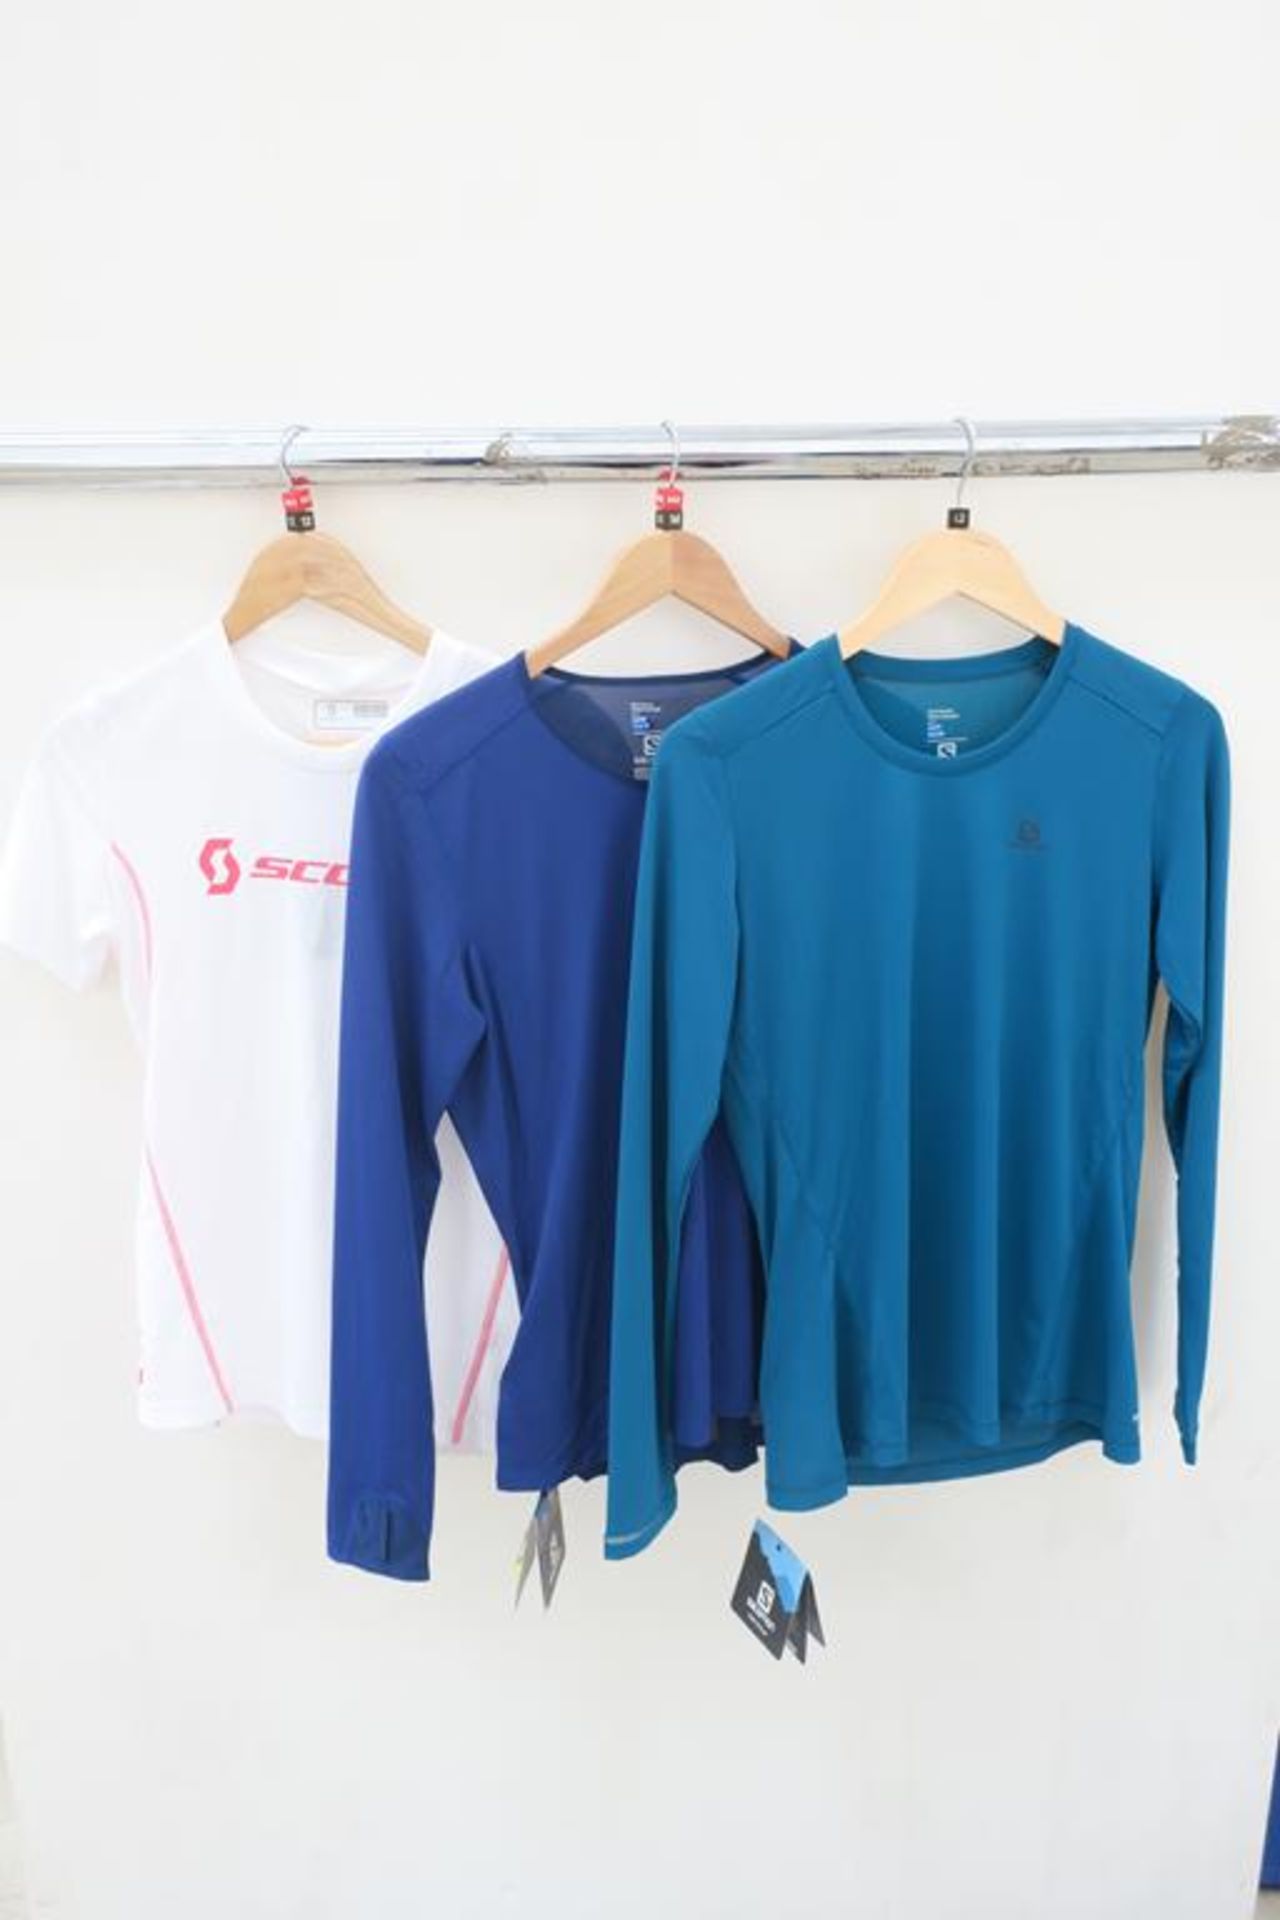 2 x Salomon Active Dry T-Shirts and Scott Running Shirt Womens